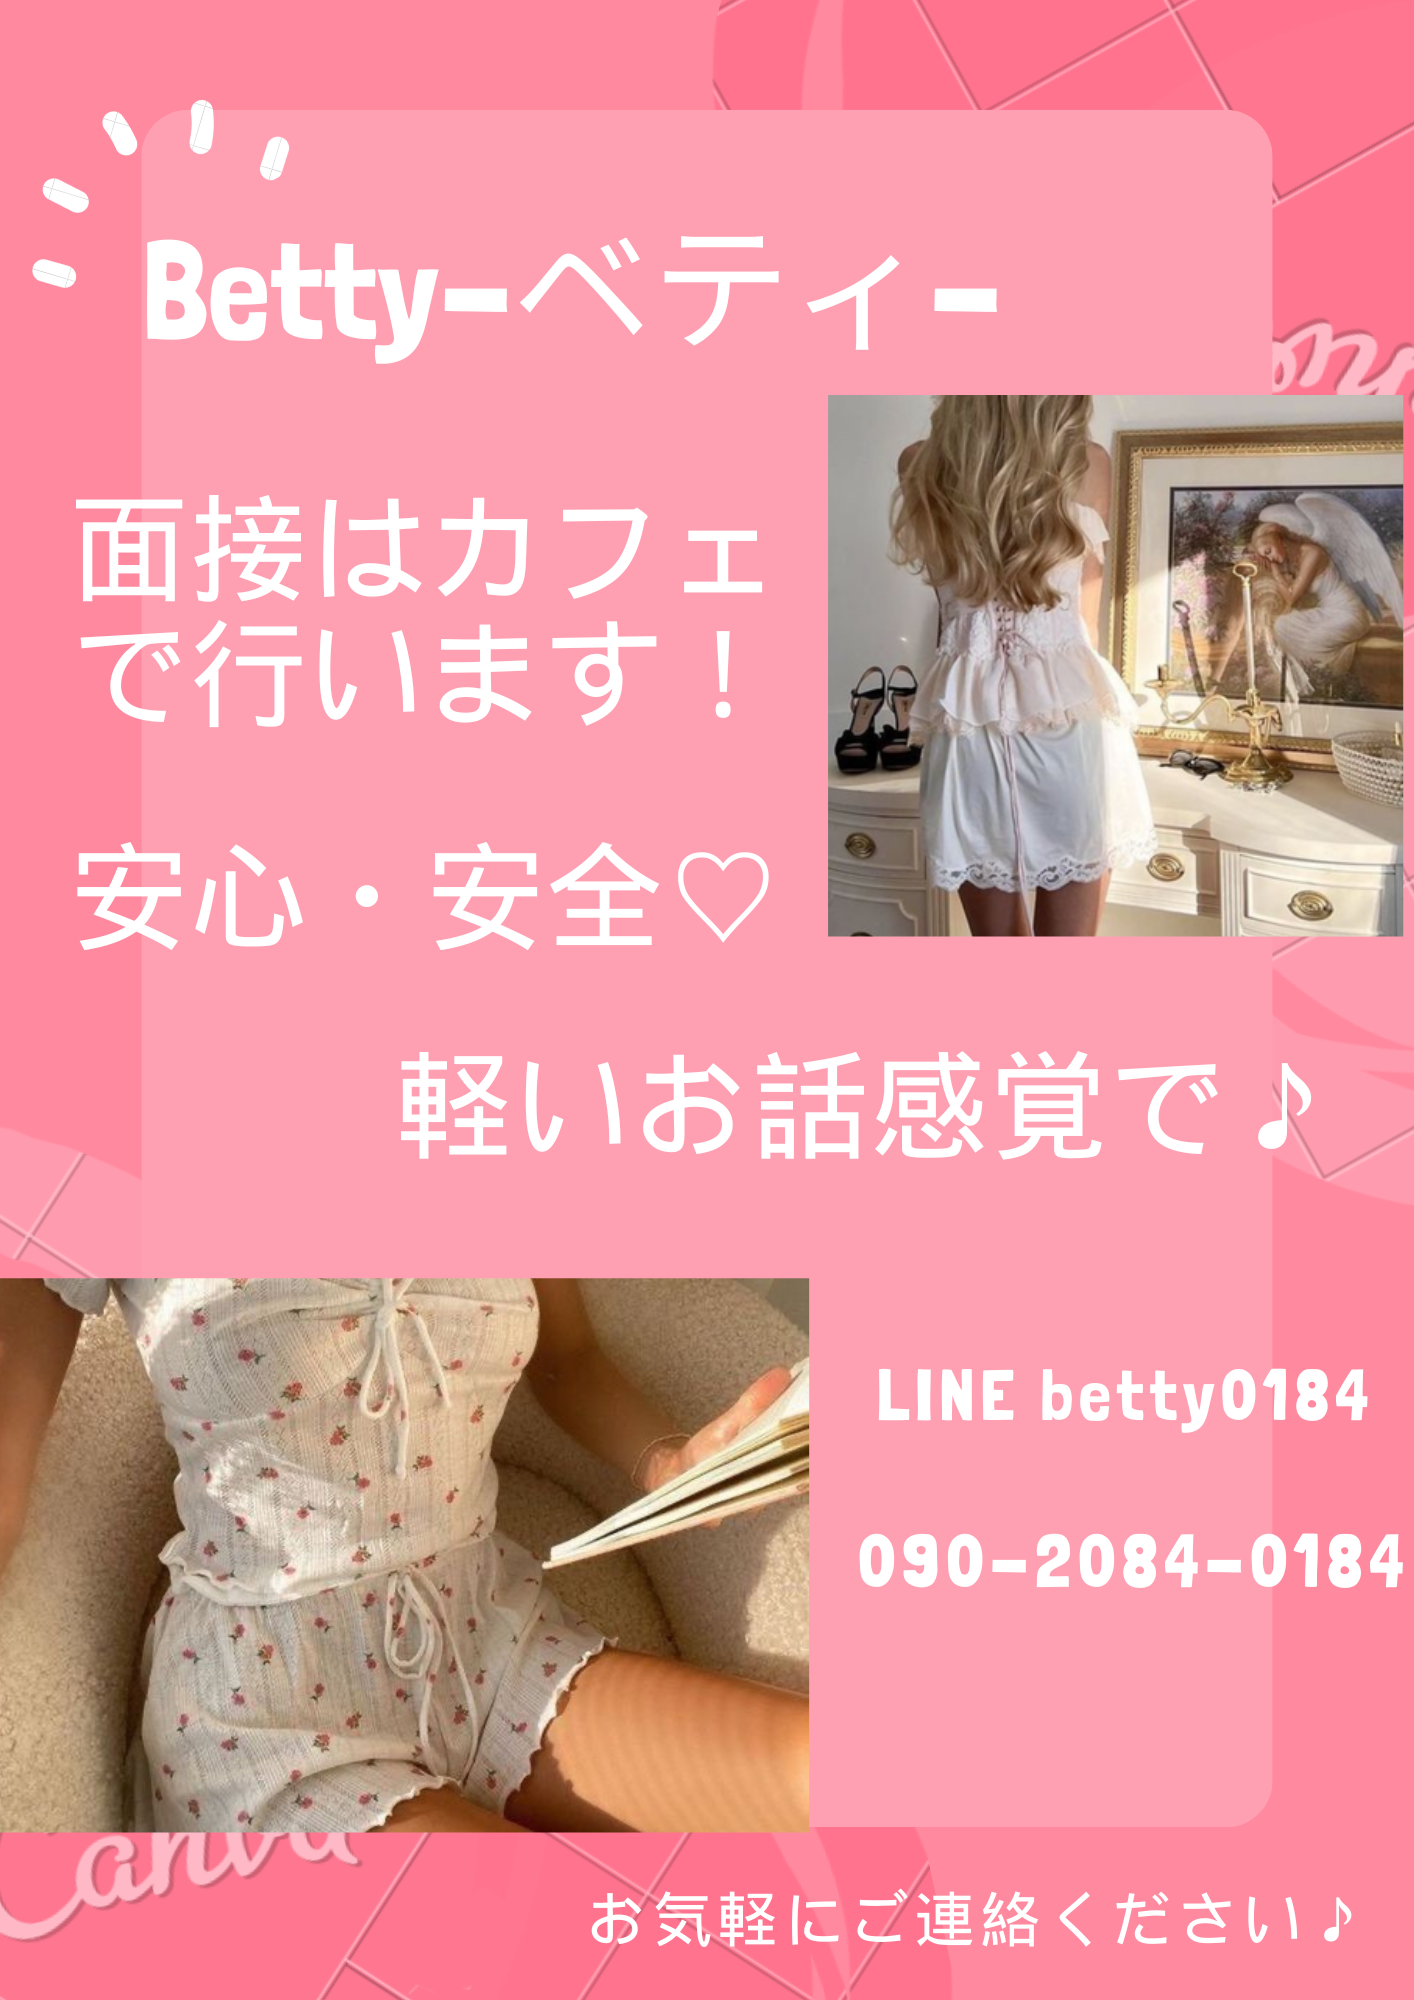 Betty-ベティ-のその他画像1